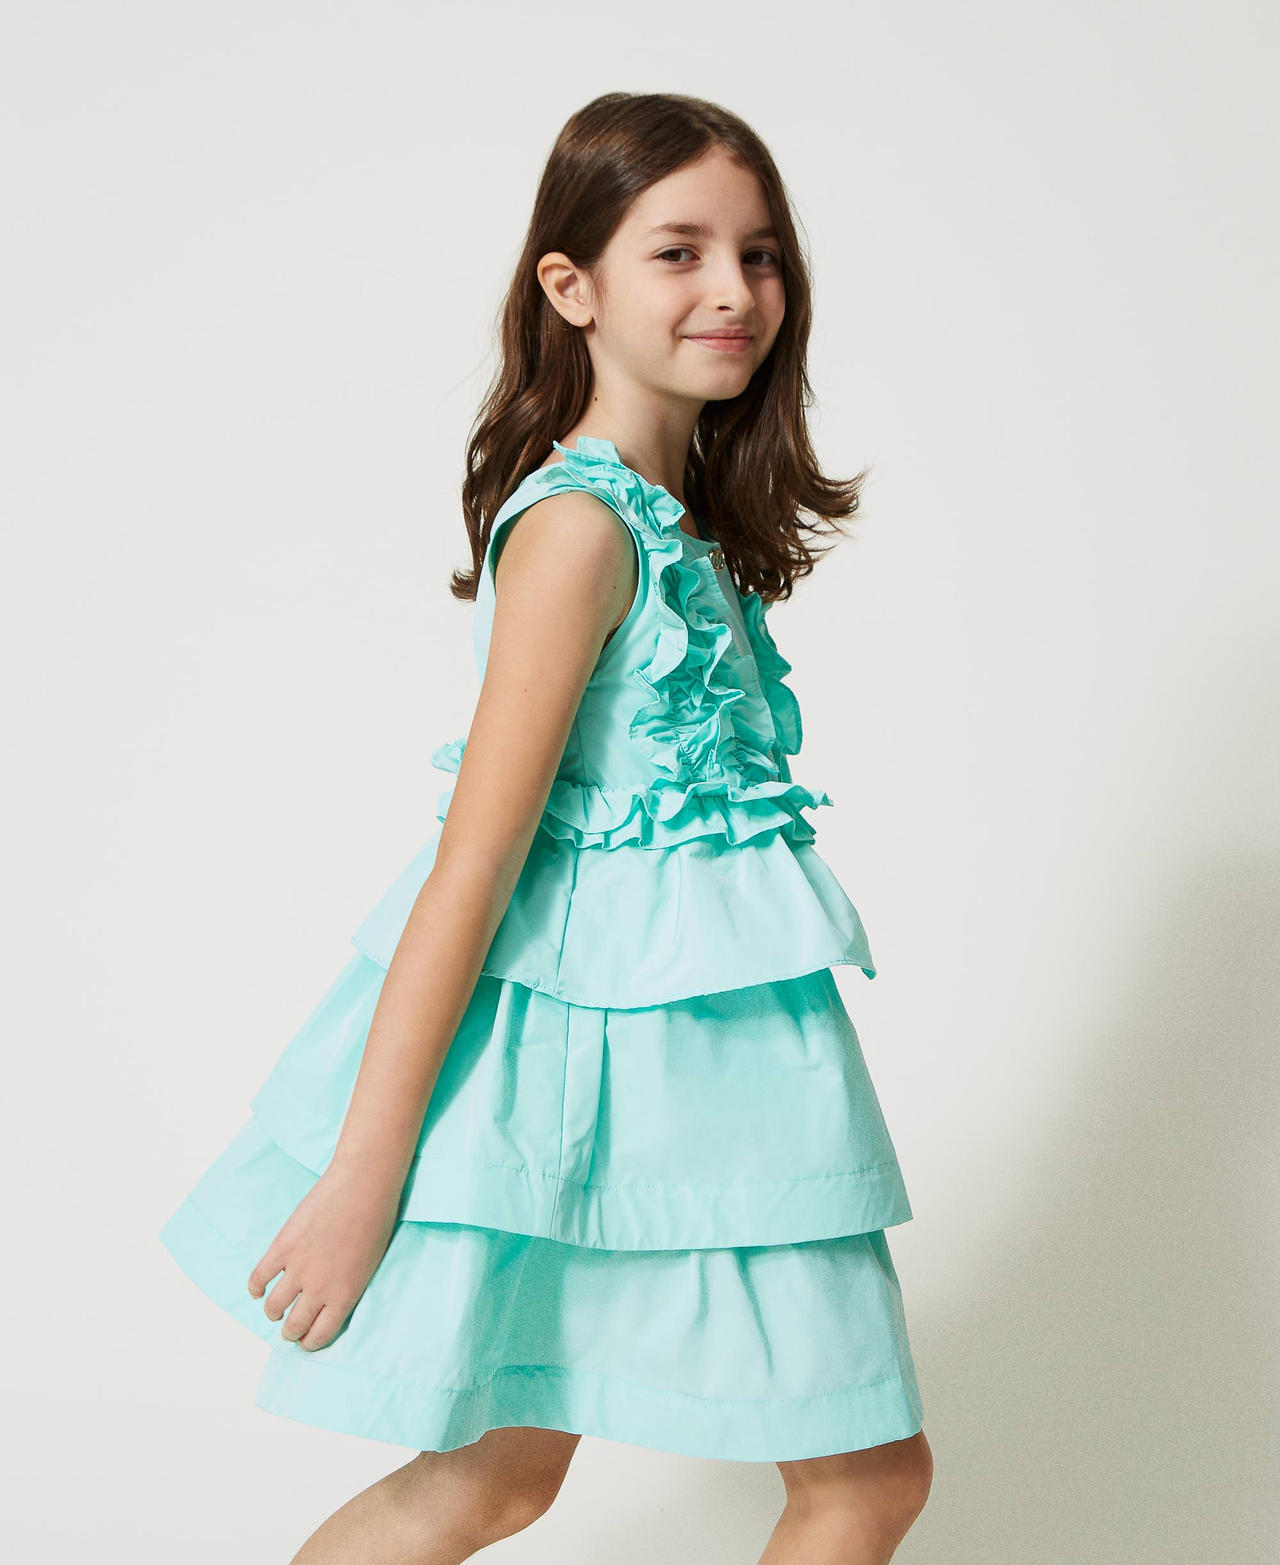 Короткое платье из тафты с рюшами и оборками Молочный мятно-зеленый Девочка 231GJ2Q5F-02